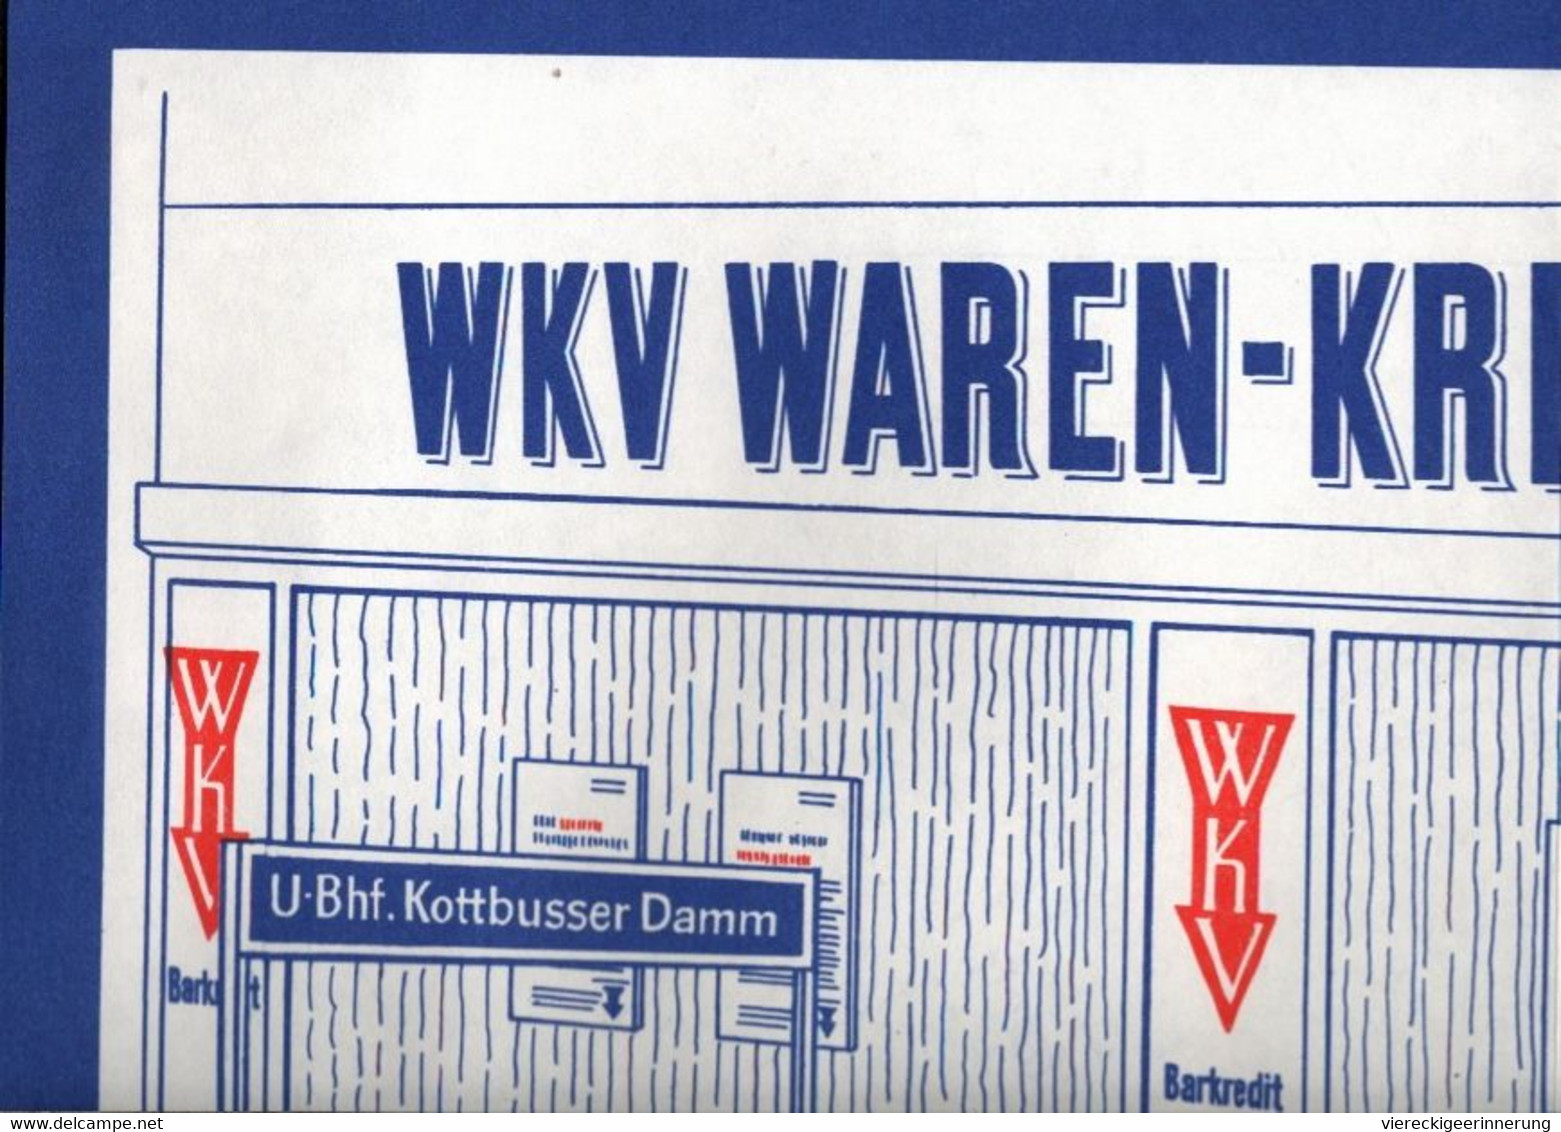 ! Reklame, Werbung Für Die WKV Waren Kredit Bank, Berlin Kreuzberg, Lottbusser Damm 13 - Pubblicitari